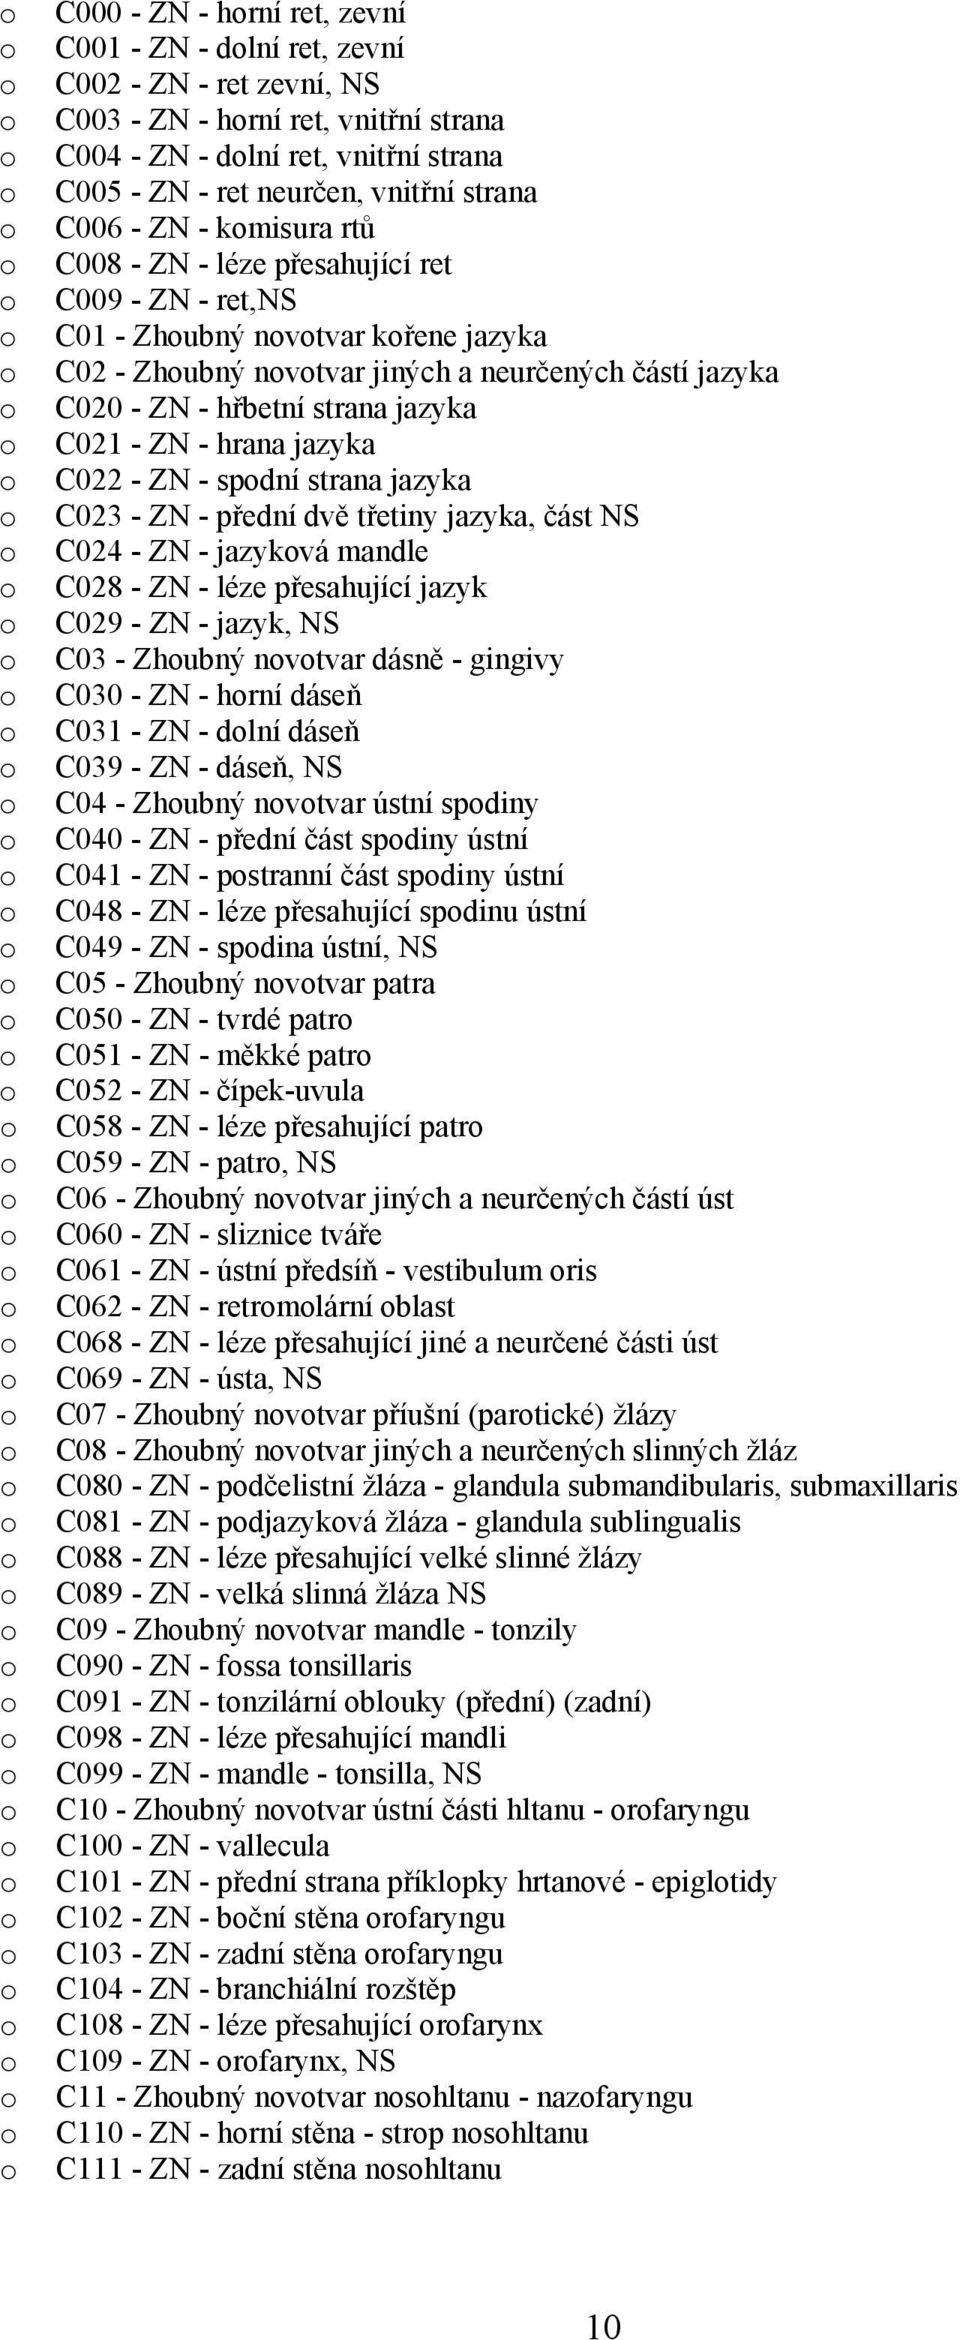 C021 - ZN - hrana jazyka C022 - ZN - spdní strana jazyka C023 - ZN - přední dvě třetiny jazyka, část NS C024 - ZN - jazykvá mandle C028 - ZN - léze přesahující jazyk C029 - ZN - jazyk, NS C03 -